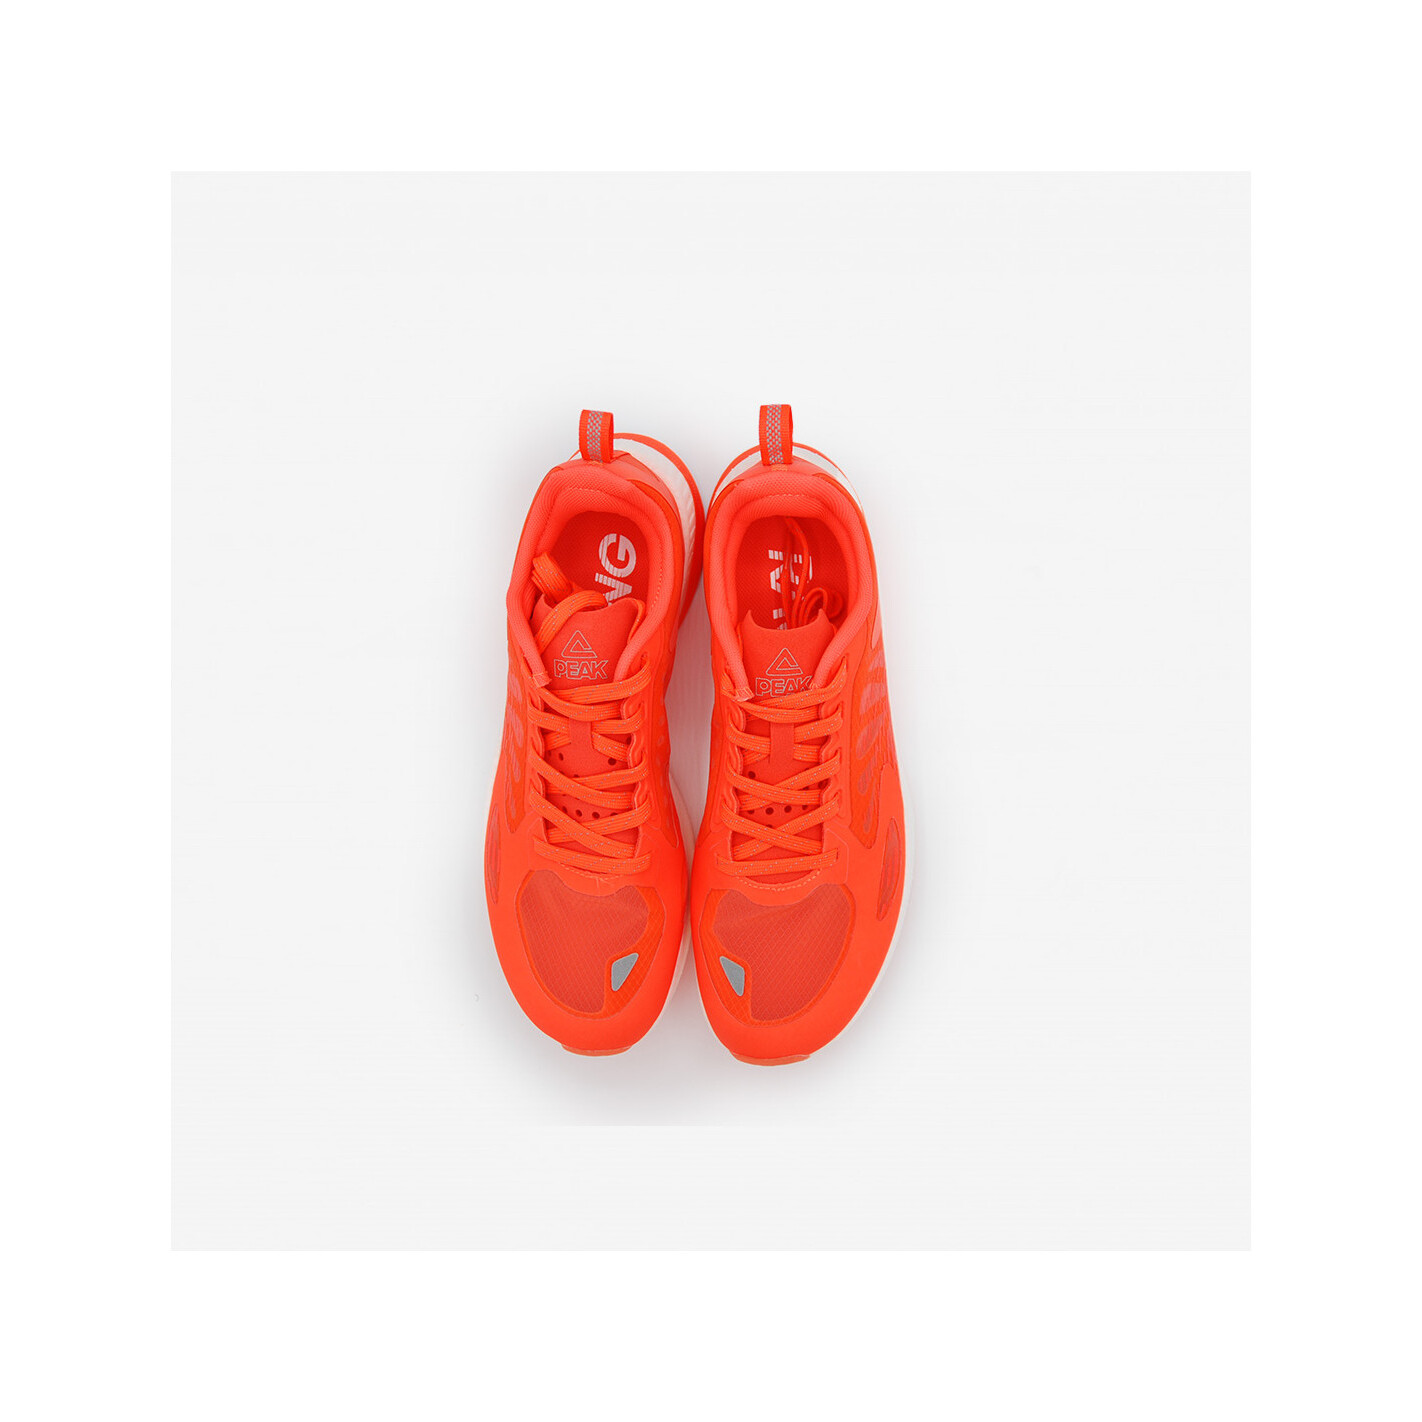 Zapatos De Running Peak Up30 - Naranja  MKP